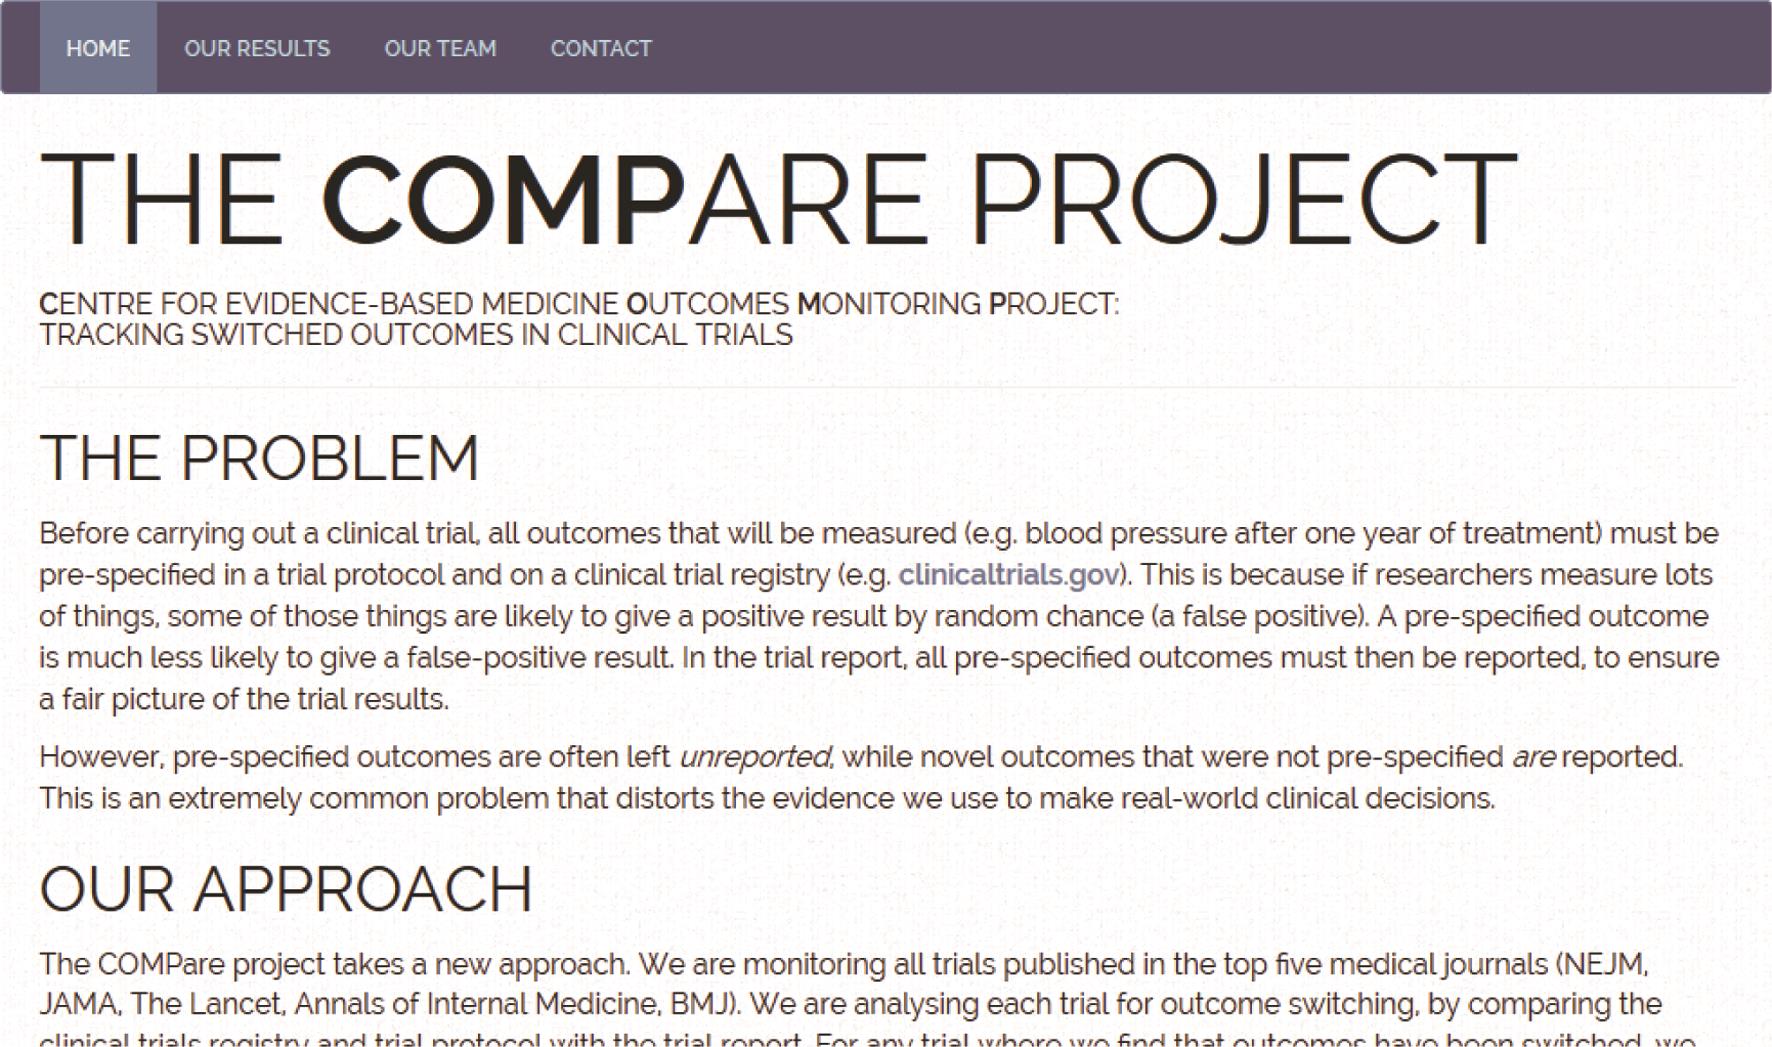 图为循证医学结果监测项目中心 Centre for Evidence-Based Medicine Outcome Monitoring Project (COMPare) 项目。